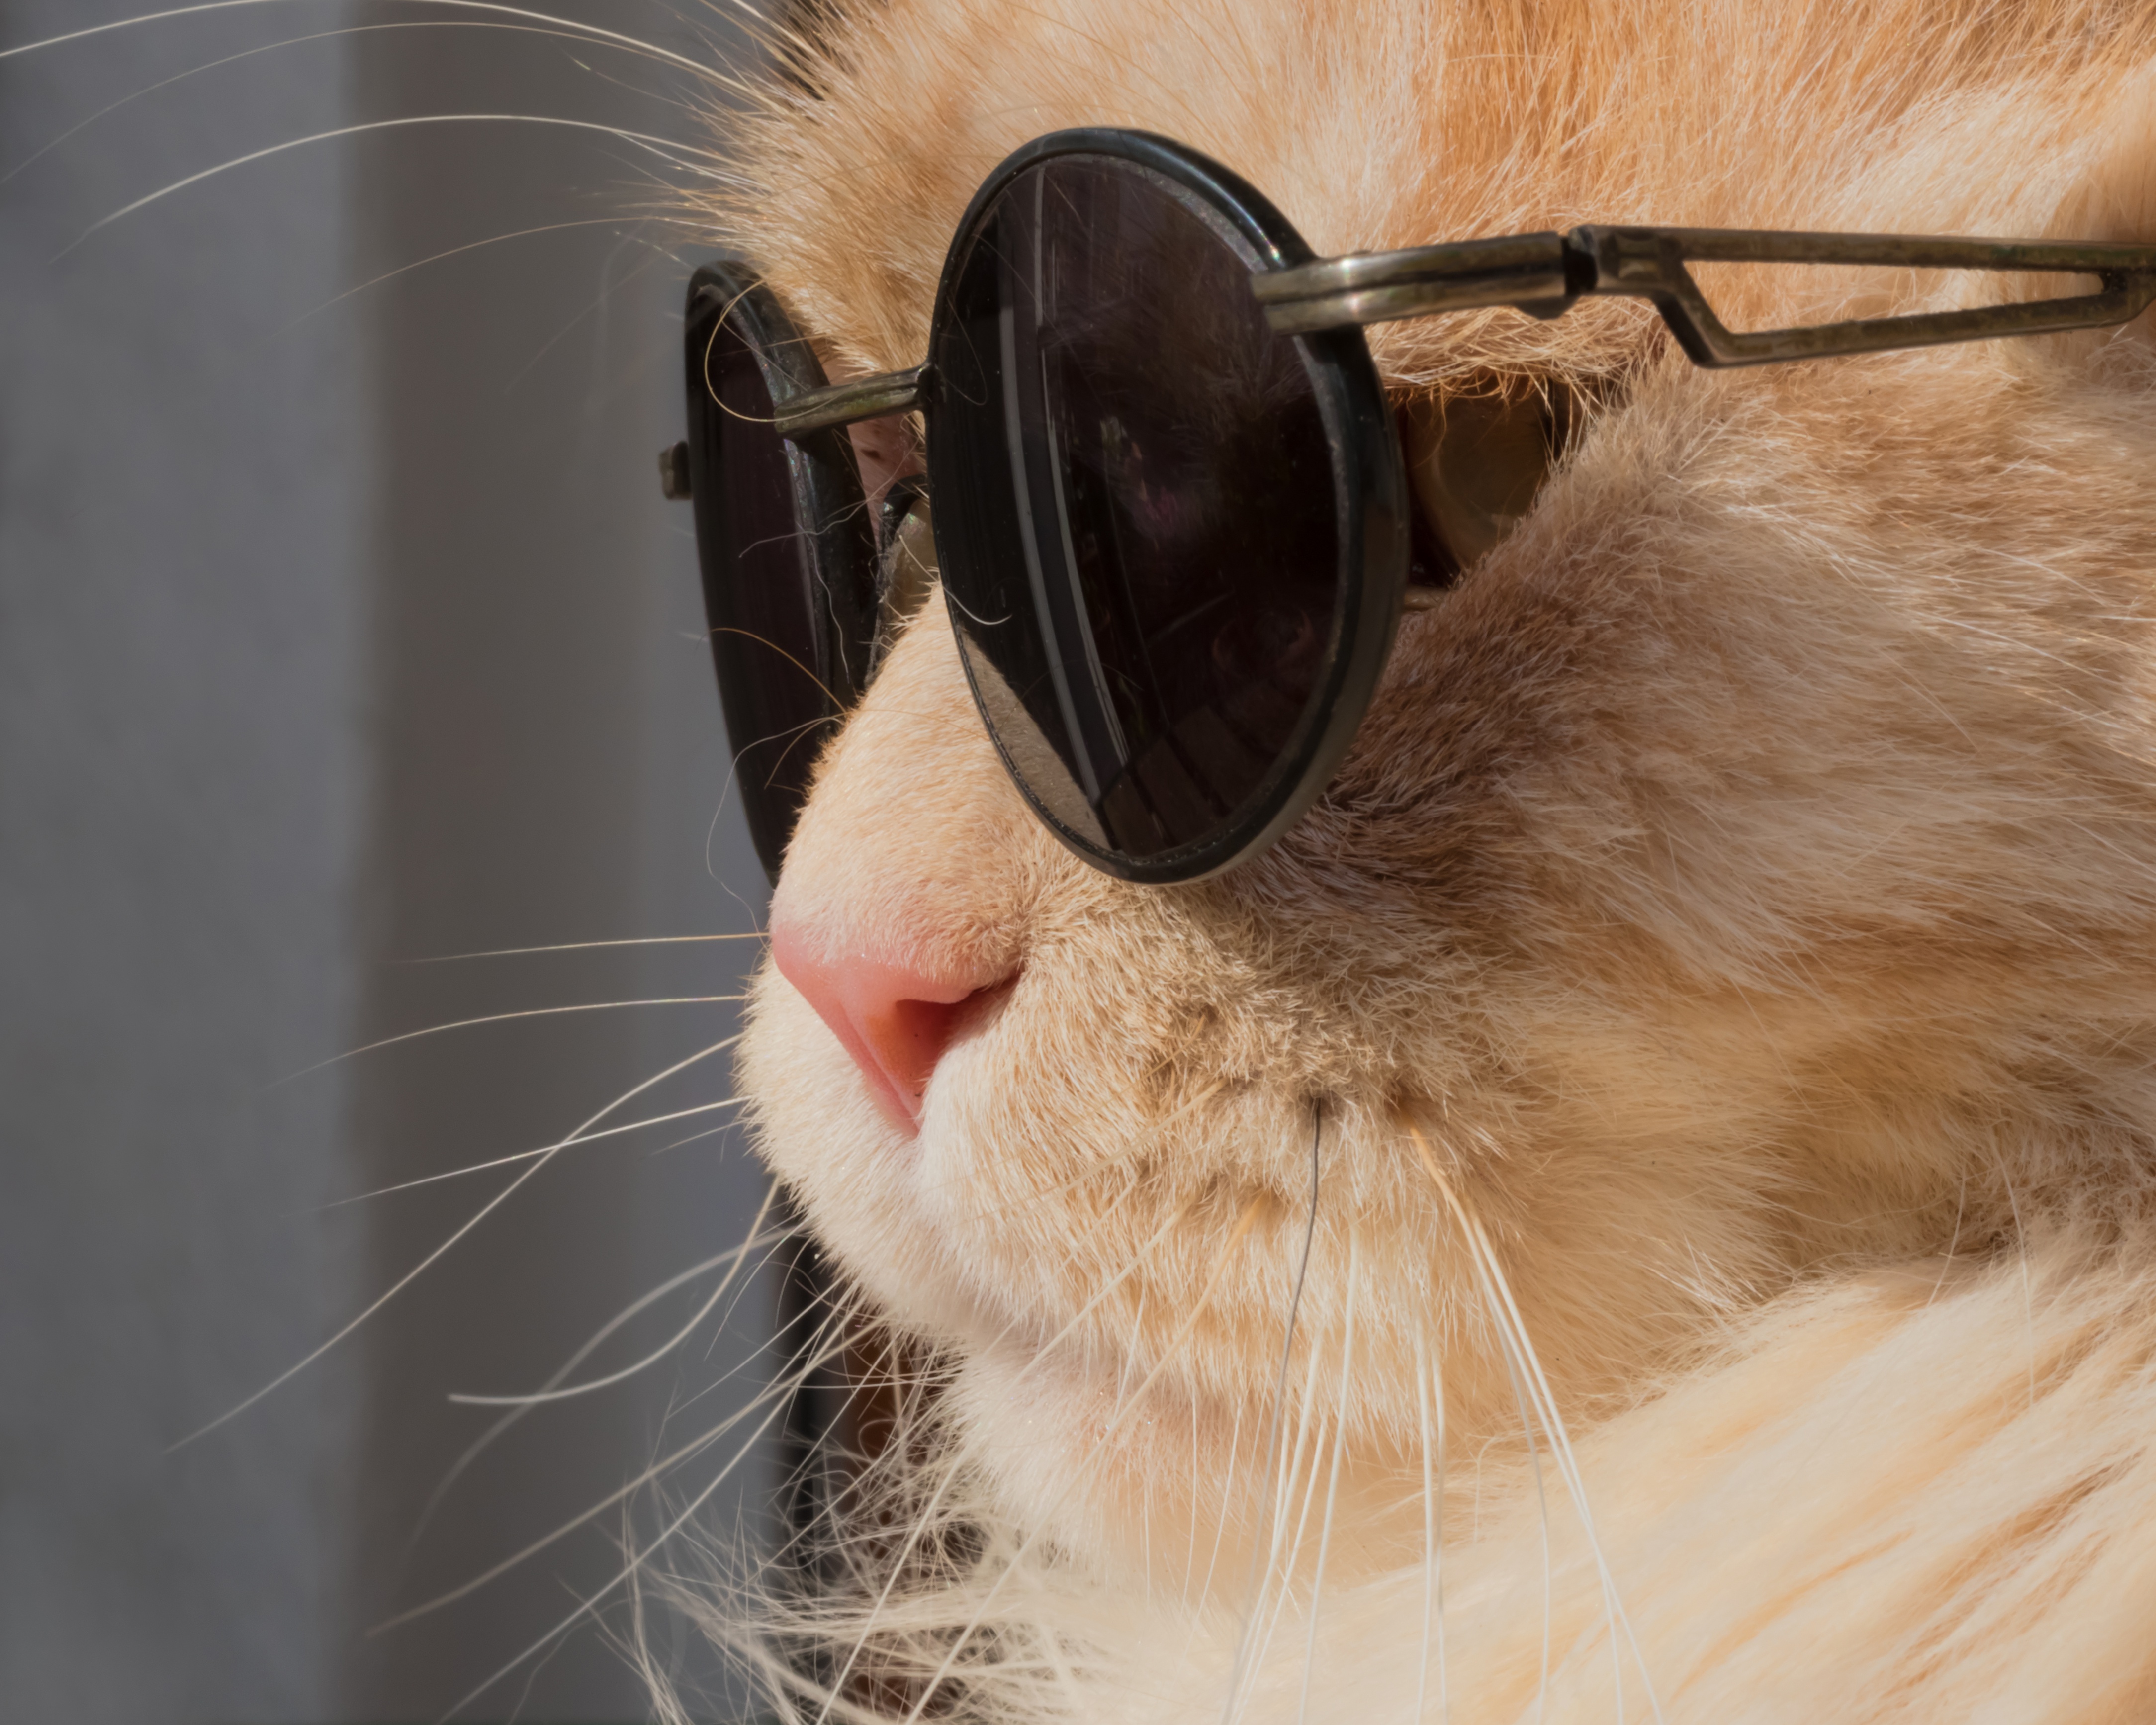 Кот в солнцезащитных очках